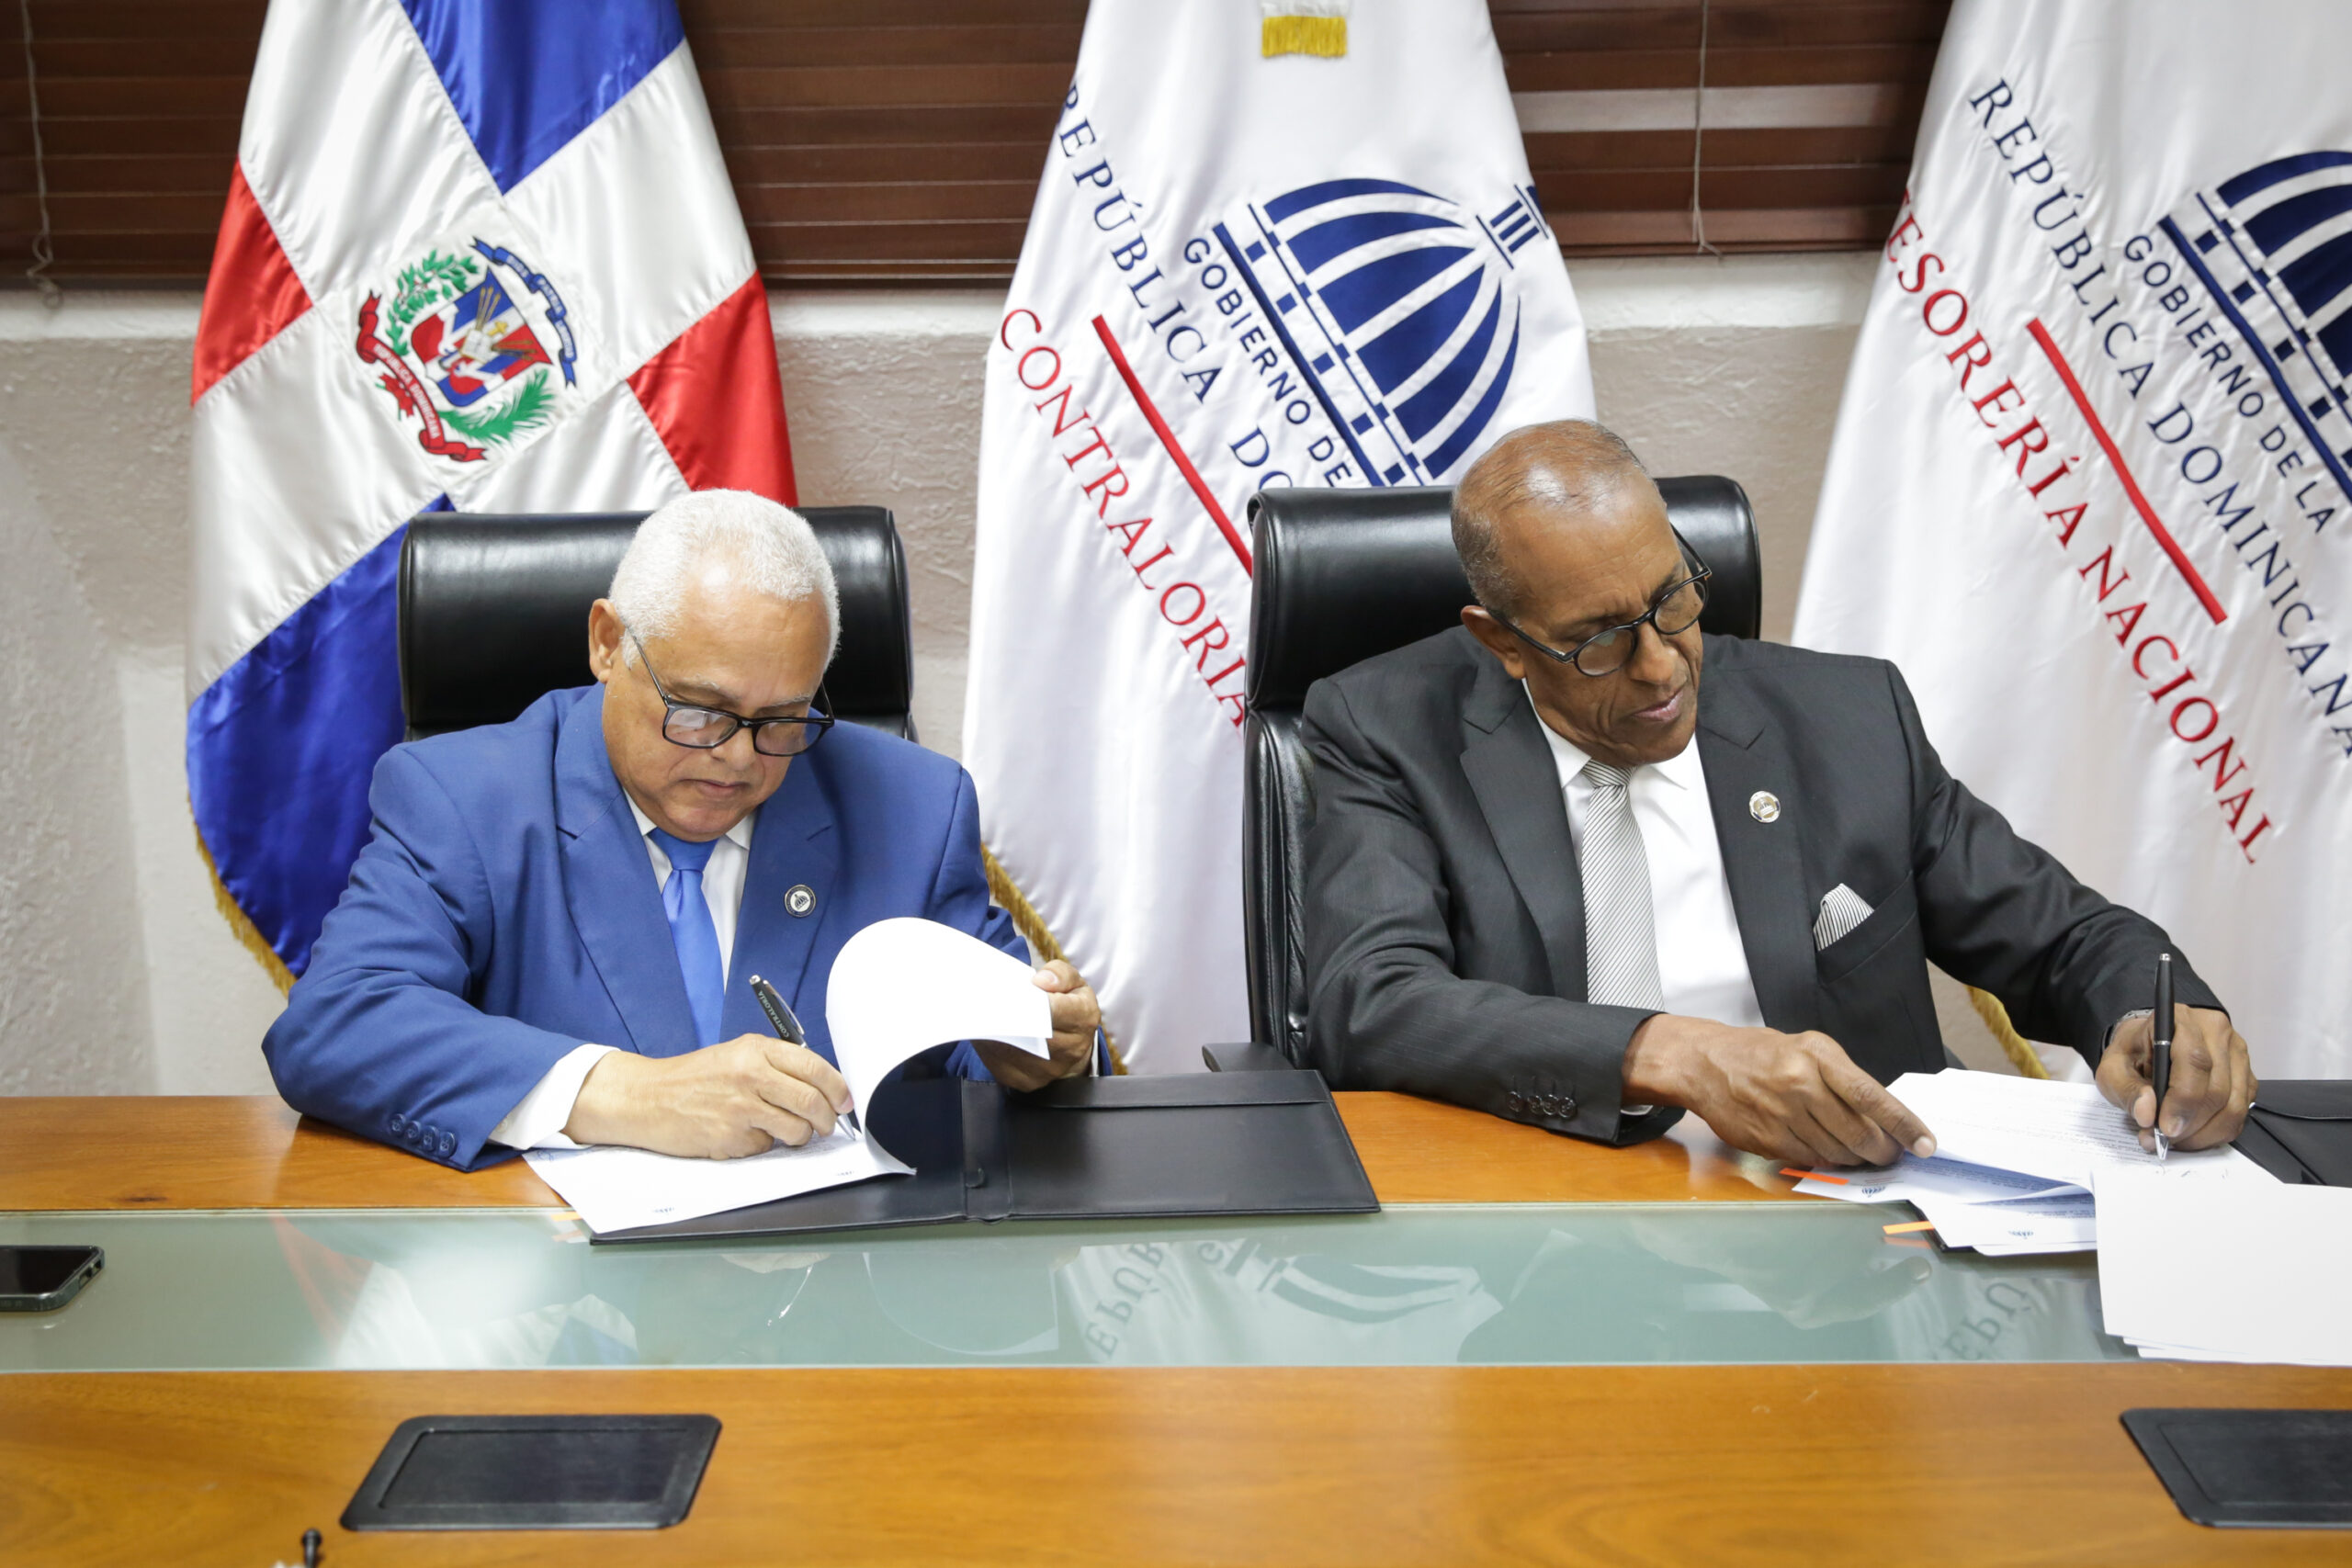 Tesorería Nacional firma acuerdo con la Contraloría General para mejorar servicios a los ciudadanos e instituciones del Estado